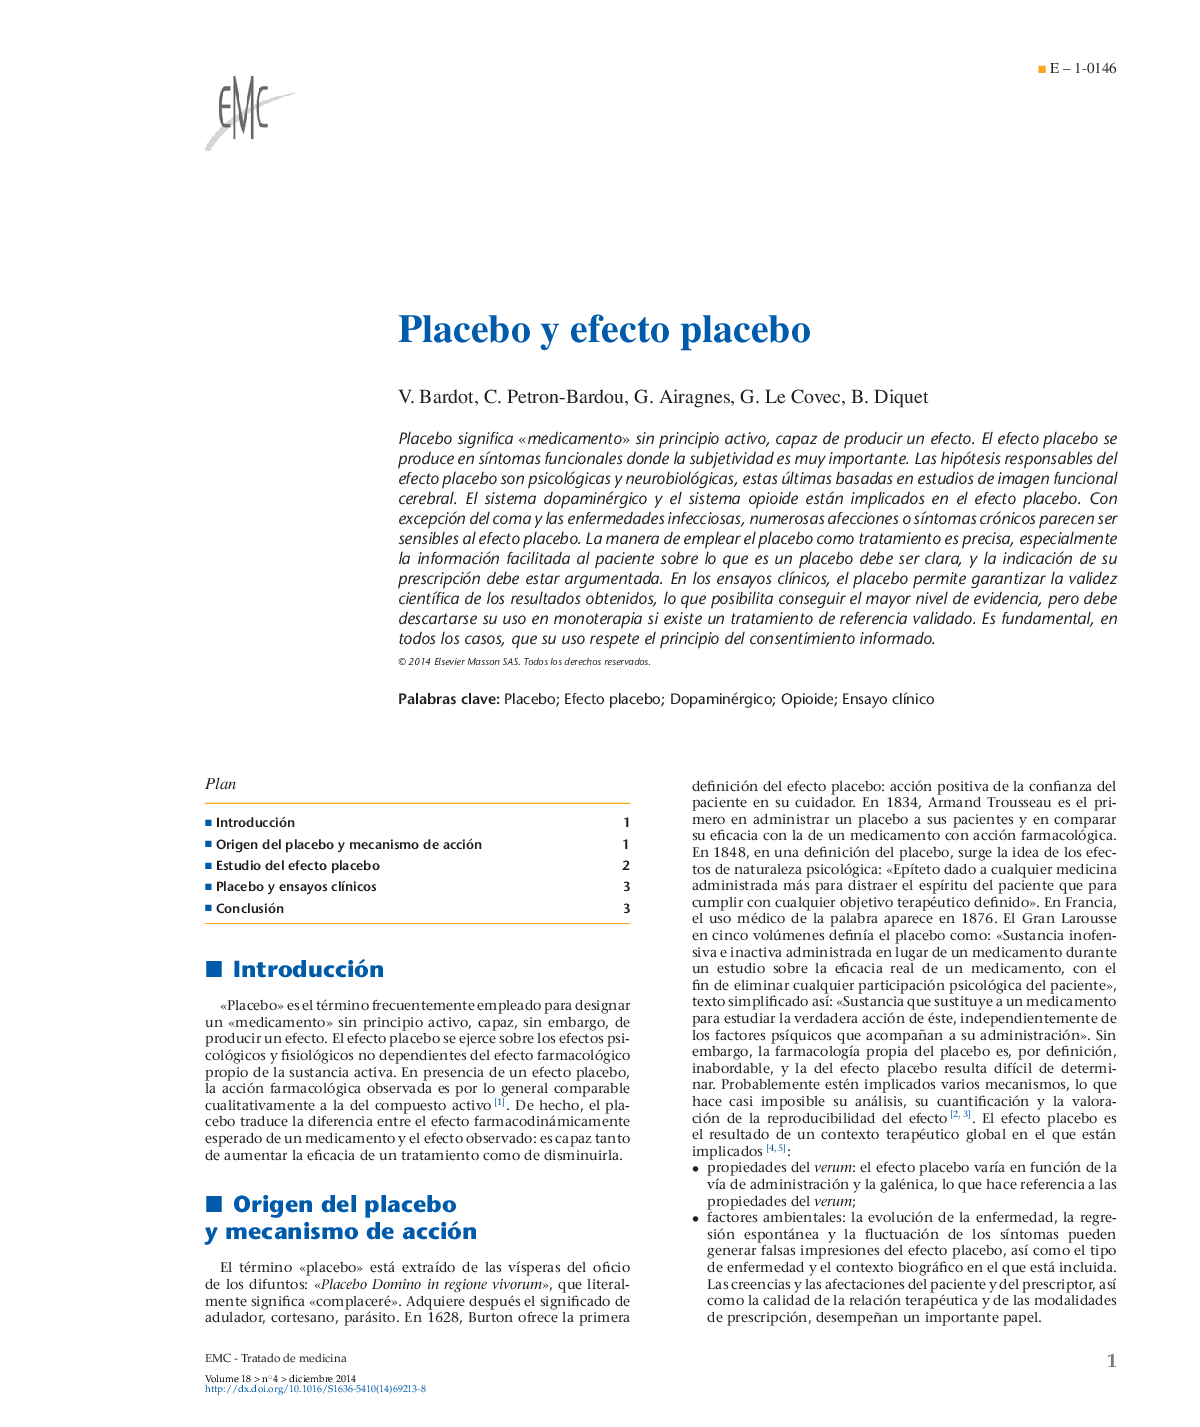 اثر پلاسبو و پلاسبو 